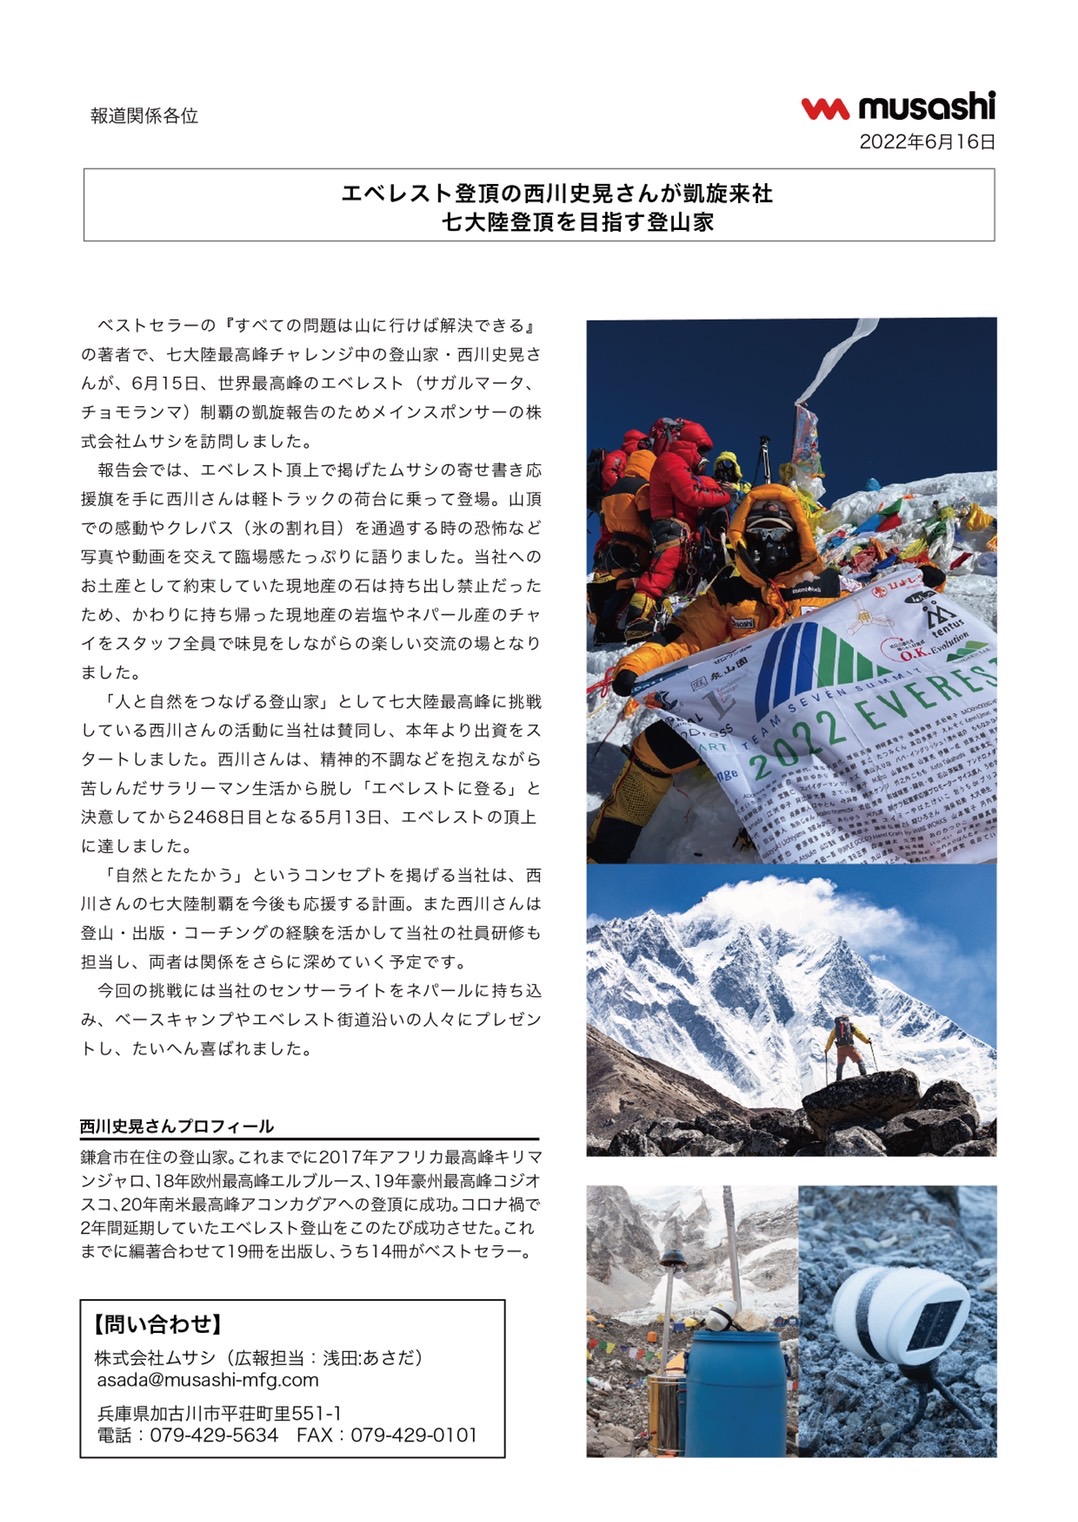 プレスリリース　エベレスト登頂の西川史晃さんが凱旋来社 七大陸登頂を目指す登山家